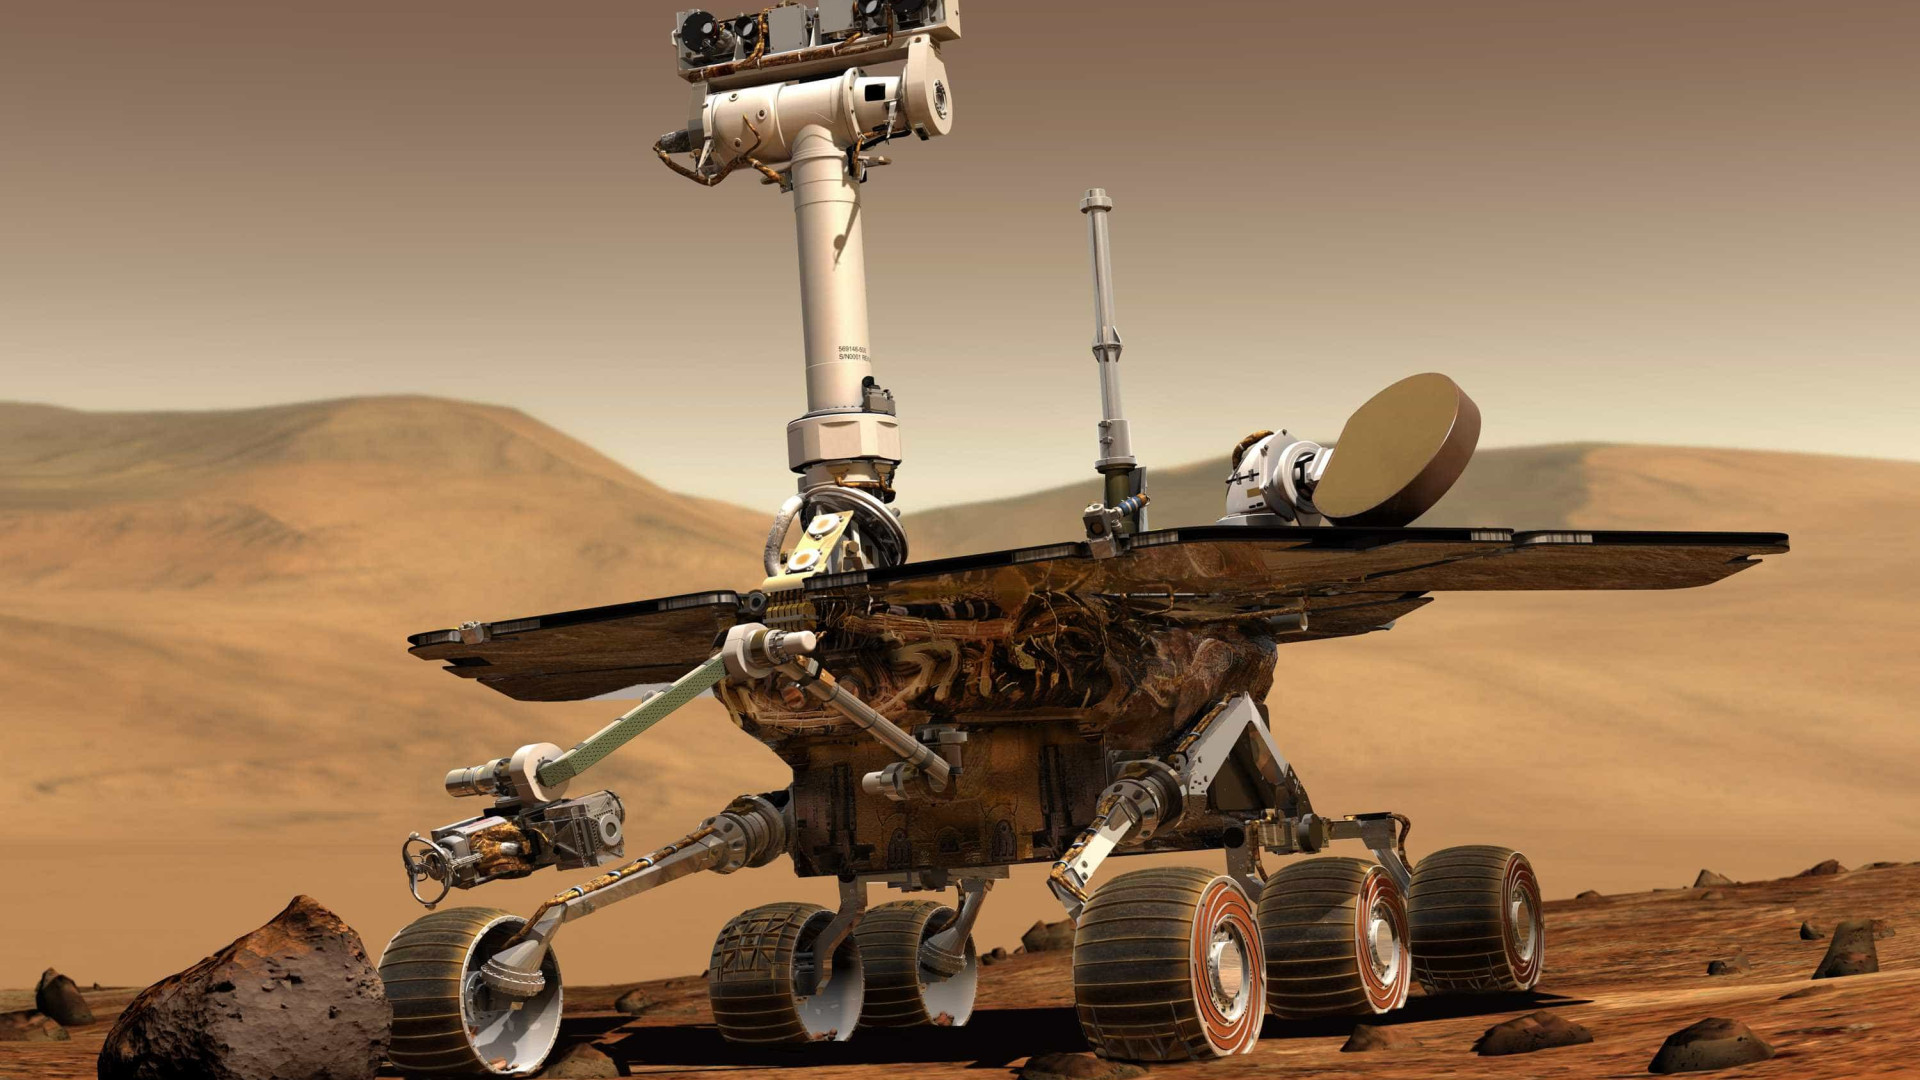 Rover Opportunity completa 5 mil 'dias' em Marte; FOTOS